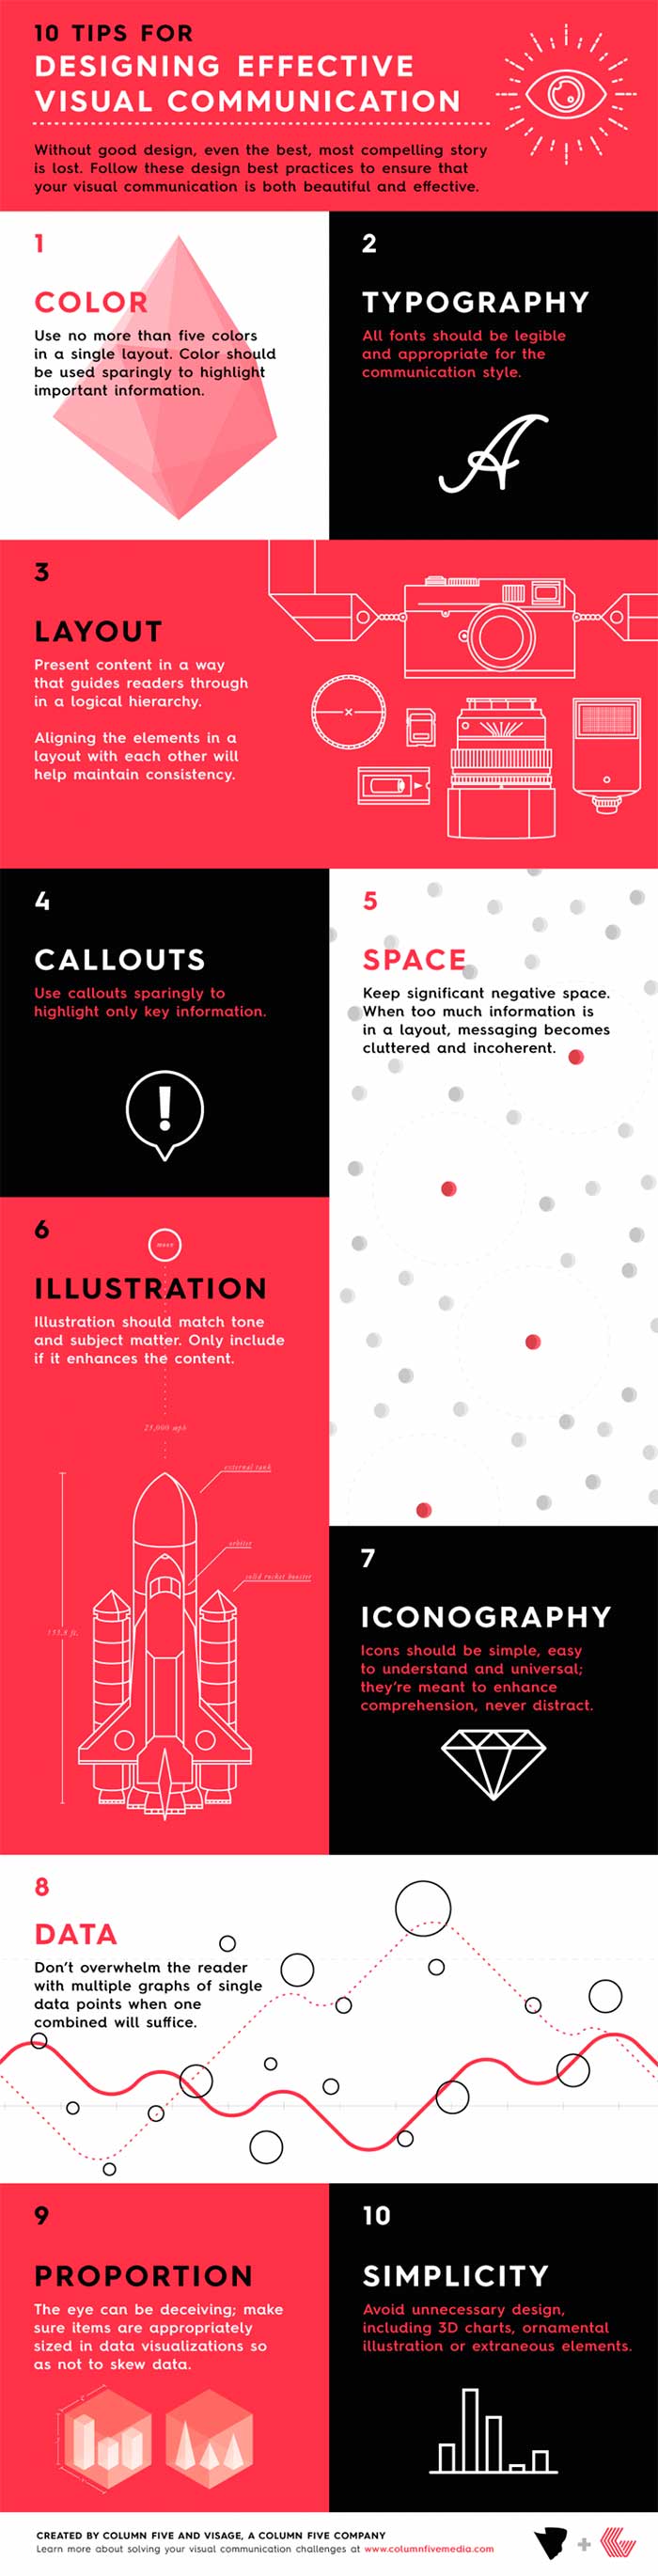 Infografia sobre el diseño efectivo para una buena comunicacion visual